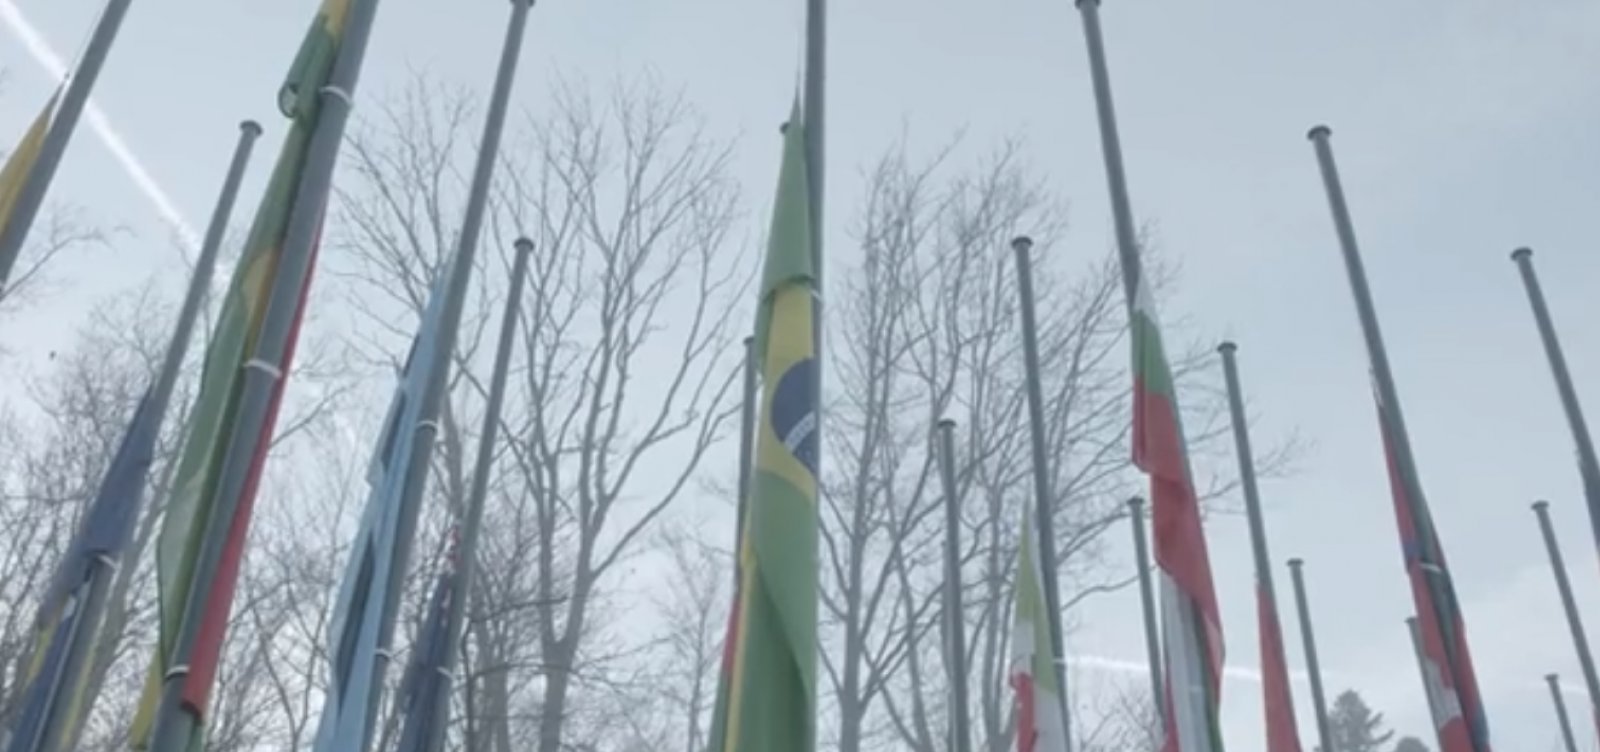 Em homenagem a Pelé, sede da Fifa tem bandeiras a meio-mastro